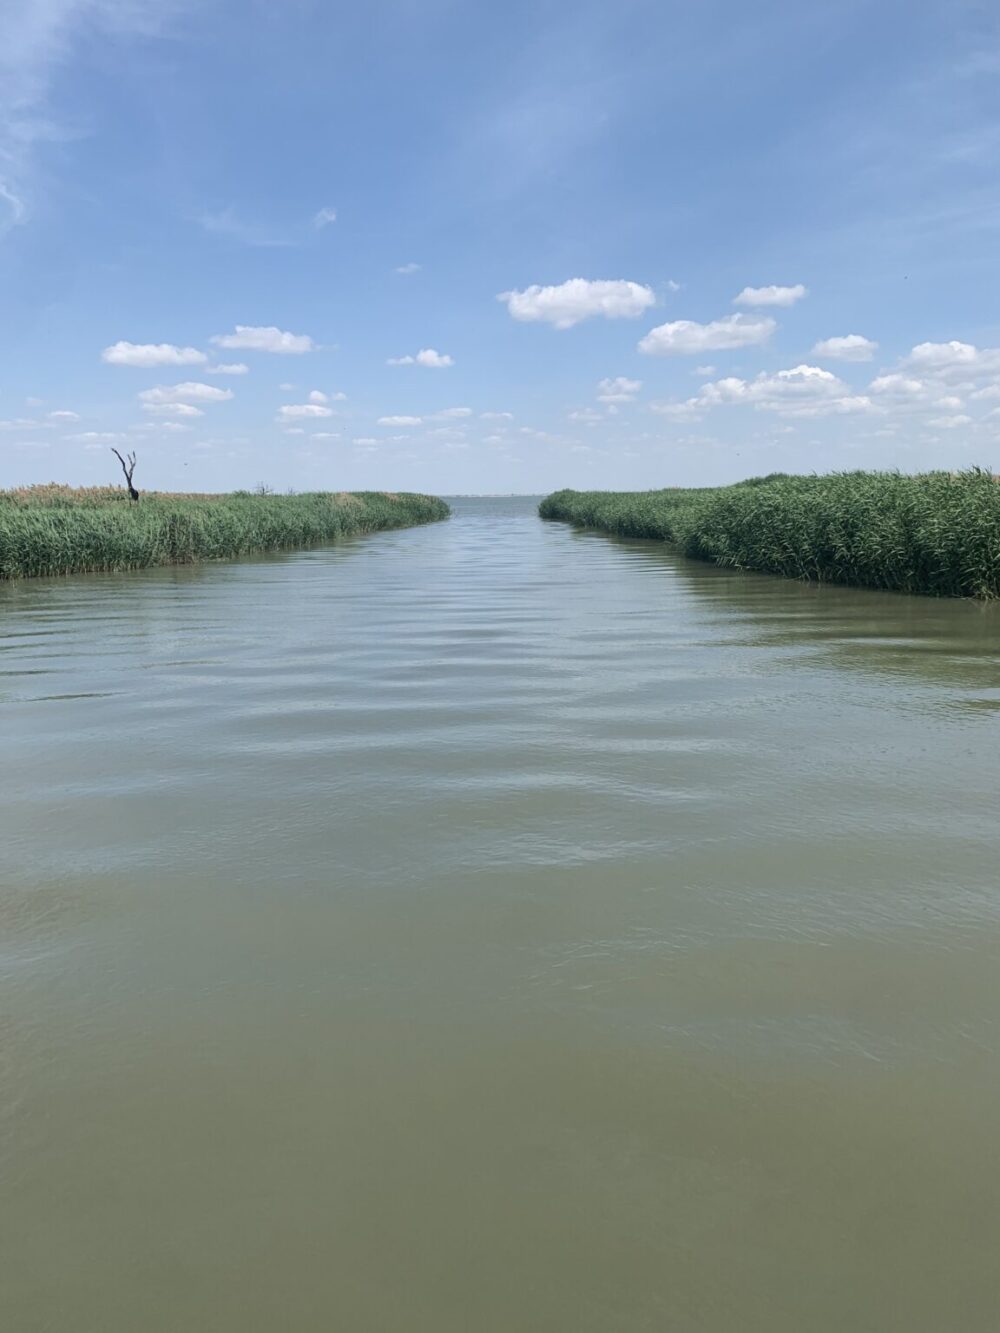 "Экологическая ситуация контролируемая": специалисты рассказали о гидрологической обстановке на озере Китай в Измаильском районе